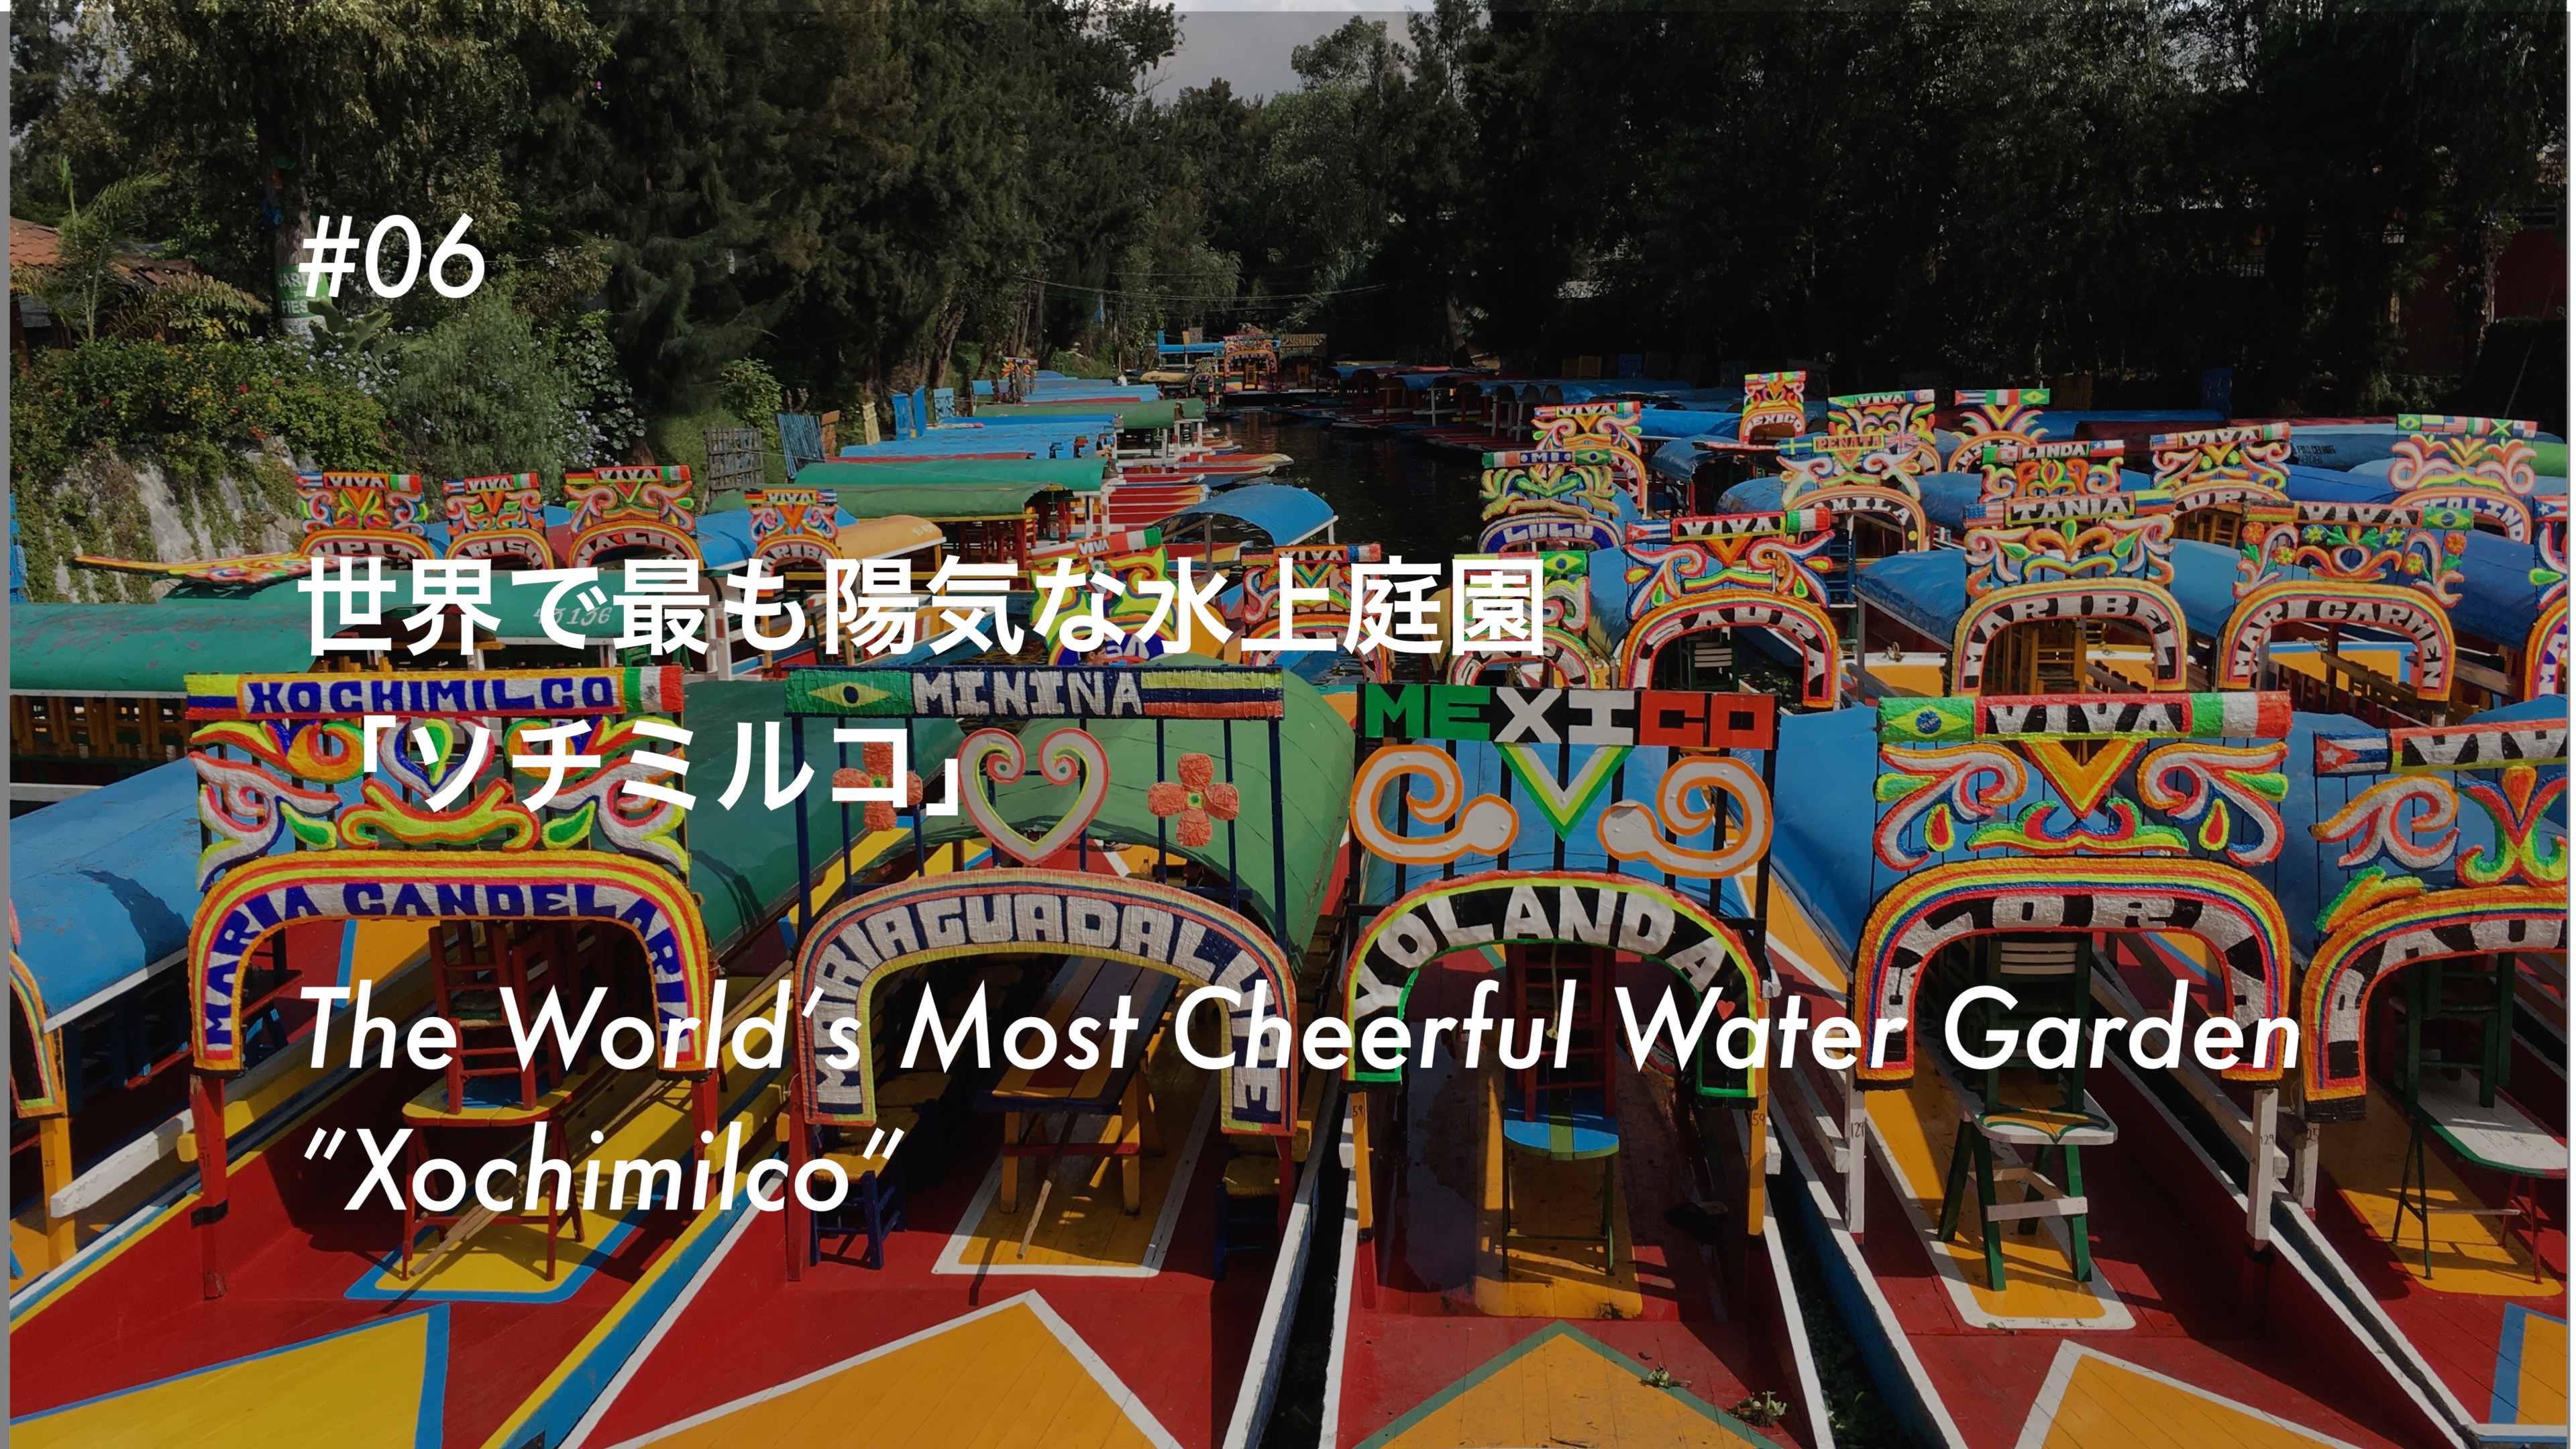 #06 世界で最も陽気な水上庭園「ソチミルコ」- The World’s Cheerful Water Garden “Xochimilco”